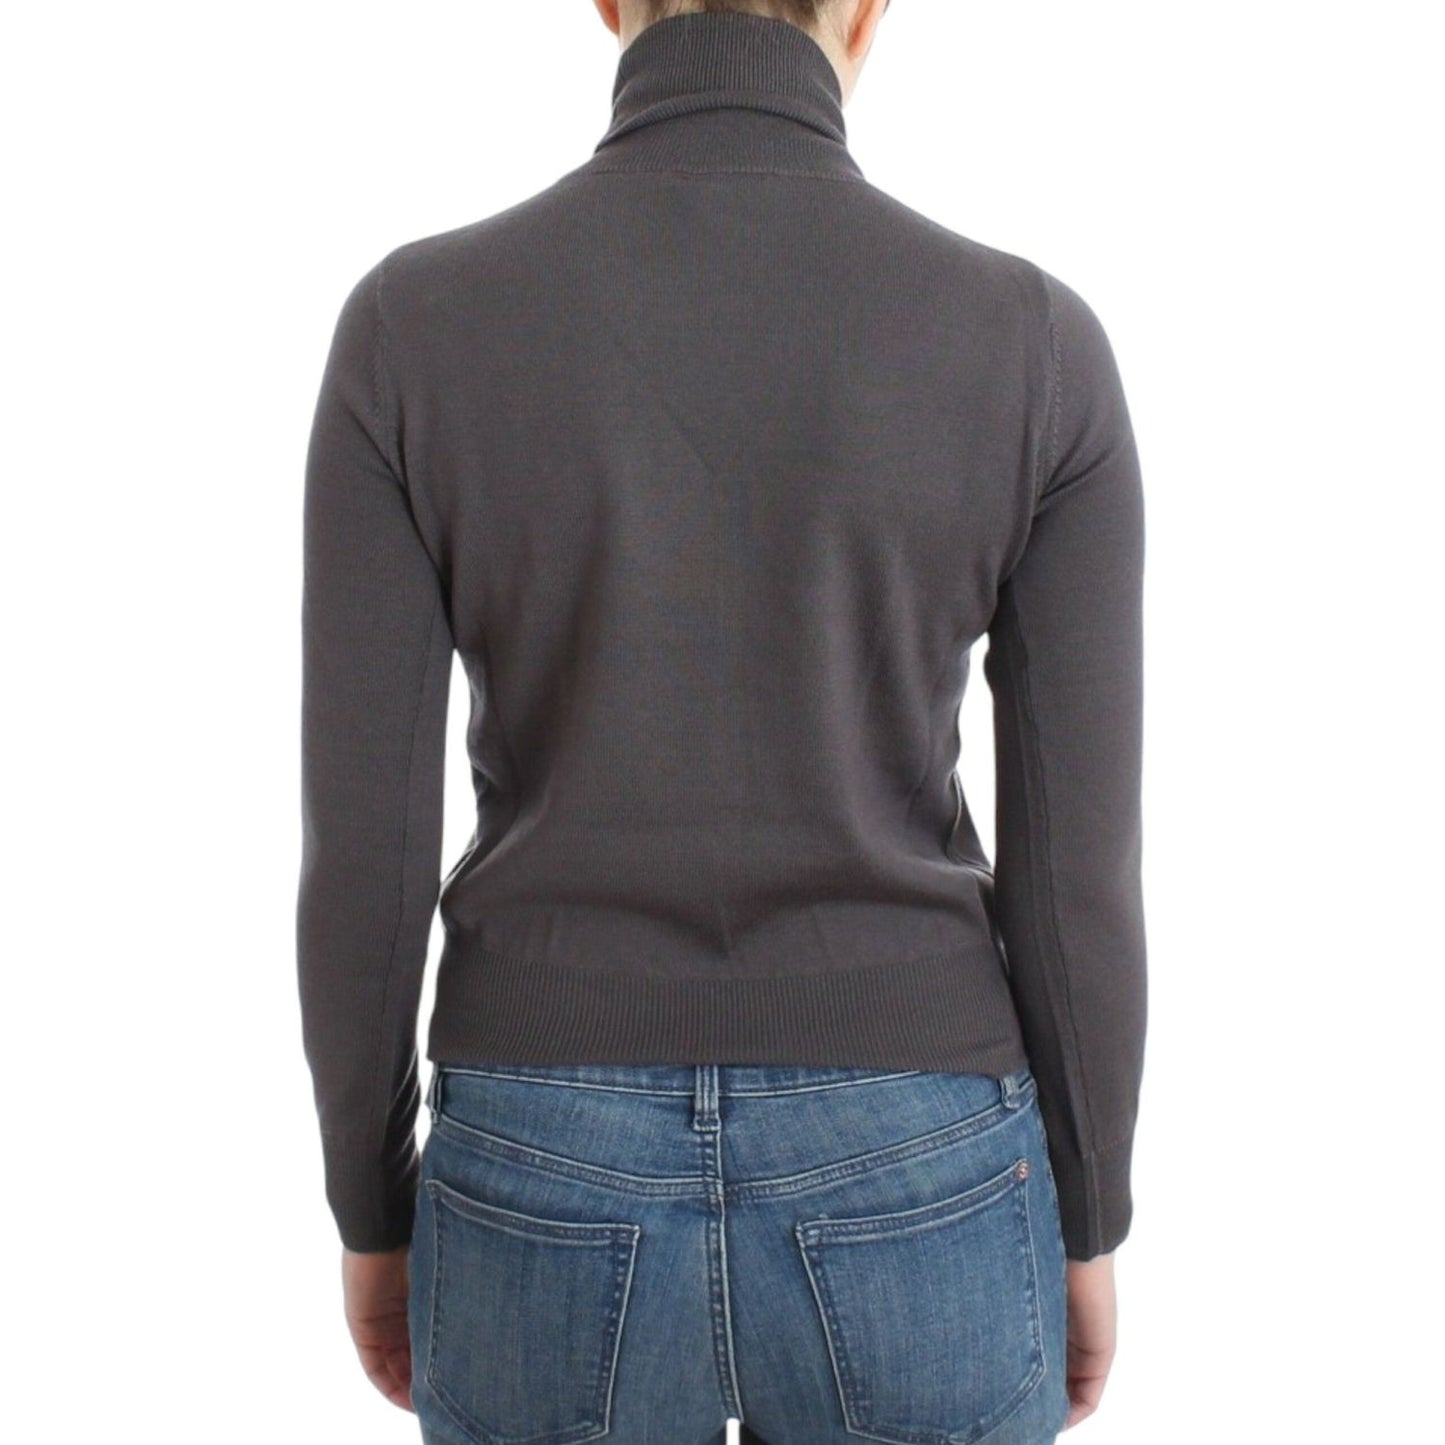 John Galliano Elegant Virgin Wool Turtleneck Sweater brown-turtleneck-cotton-sweater